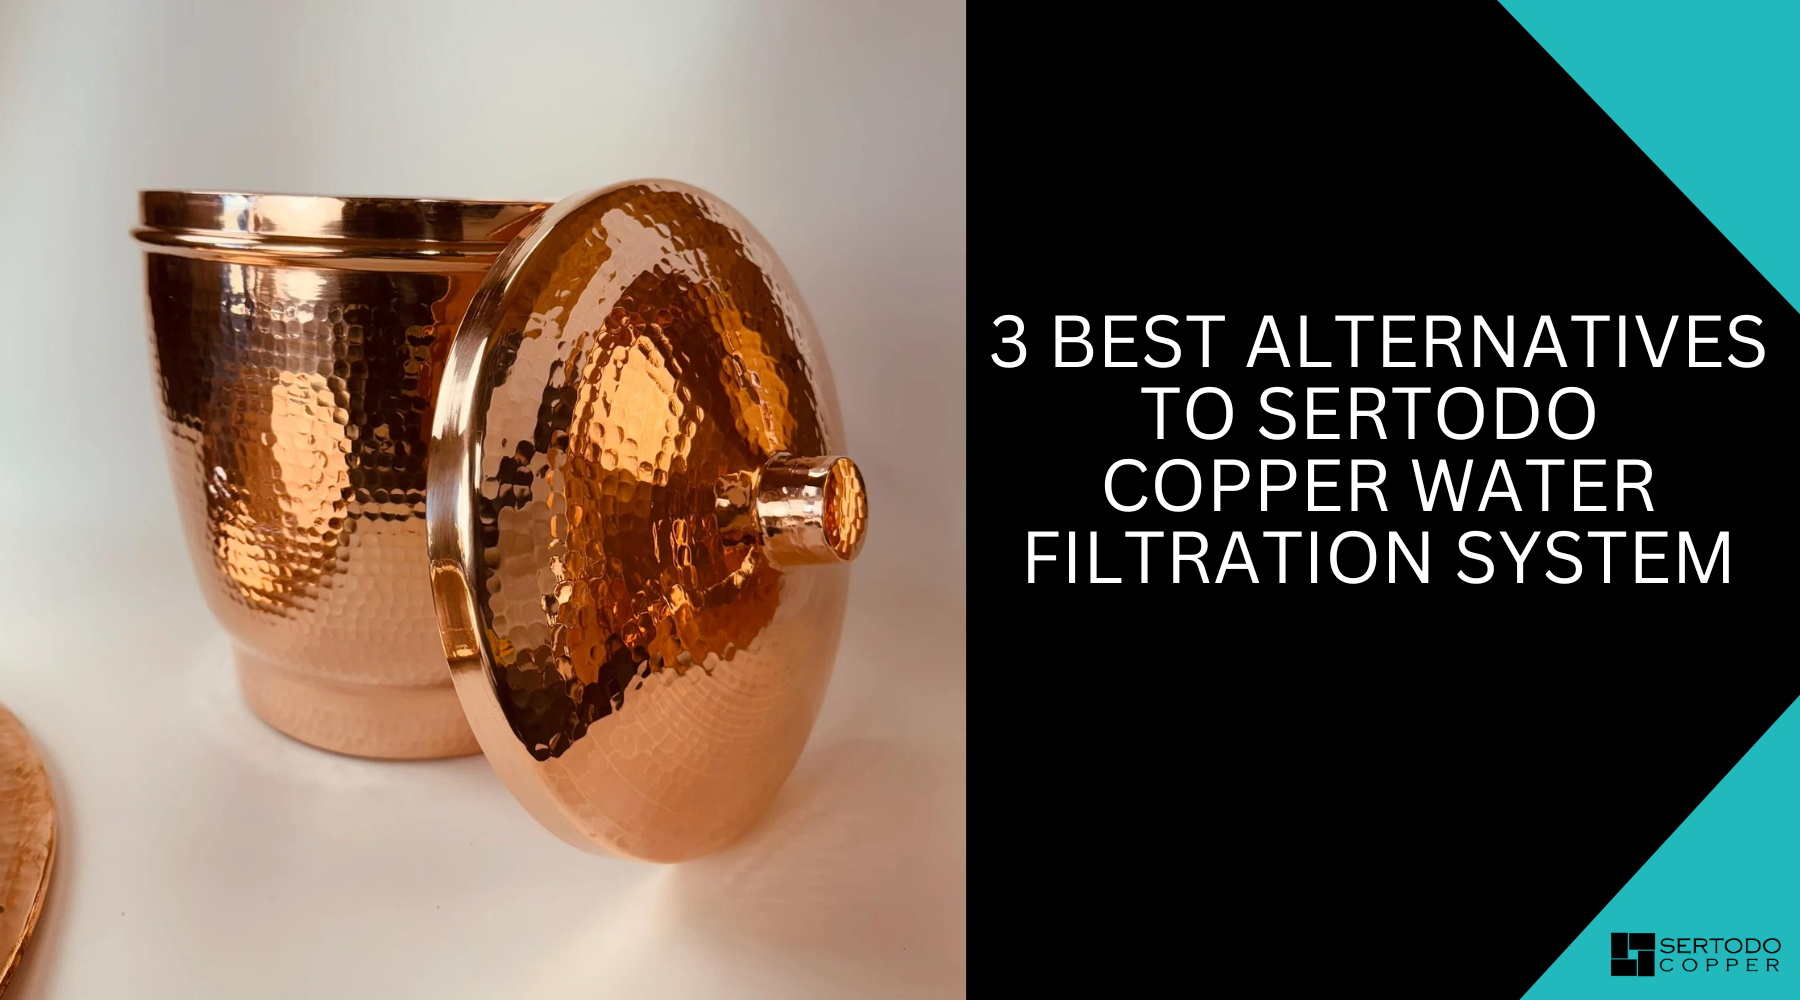 Sertodo Copper Water Filter System best alternatives